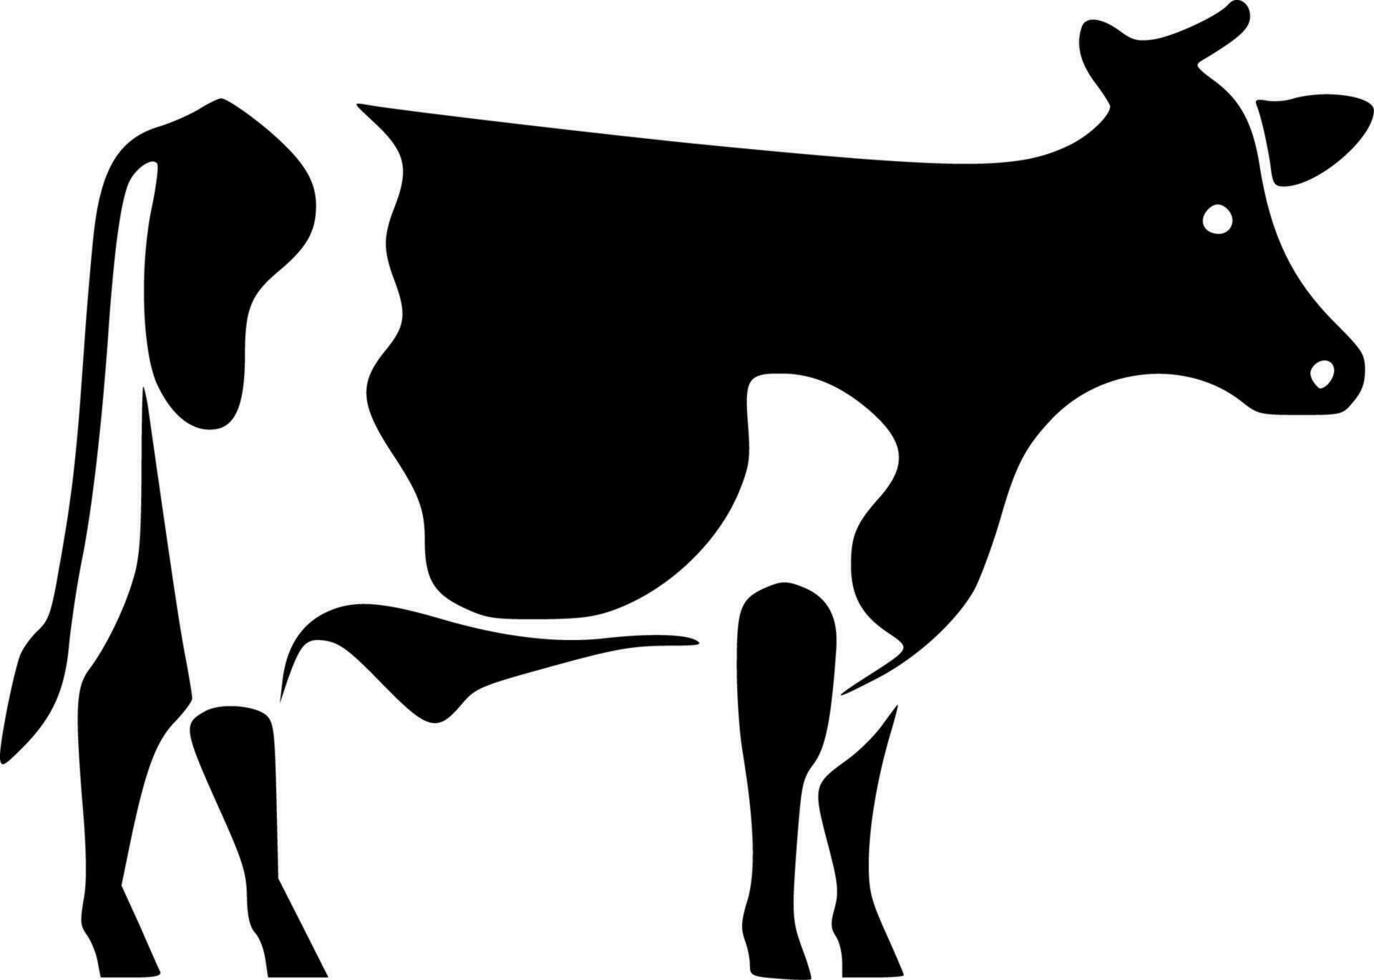 ko - minimalistisk och platt logotyp - vektor illustration